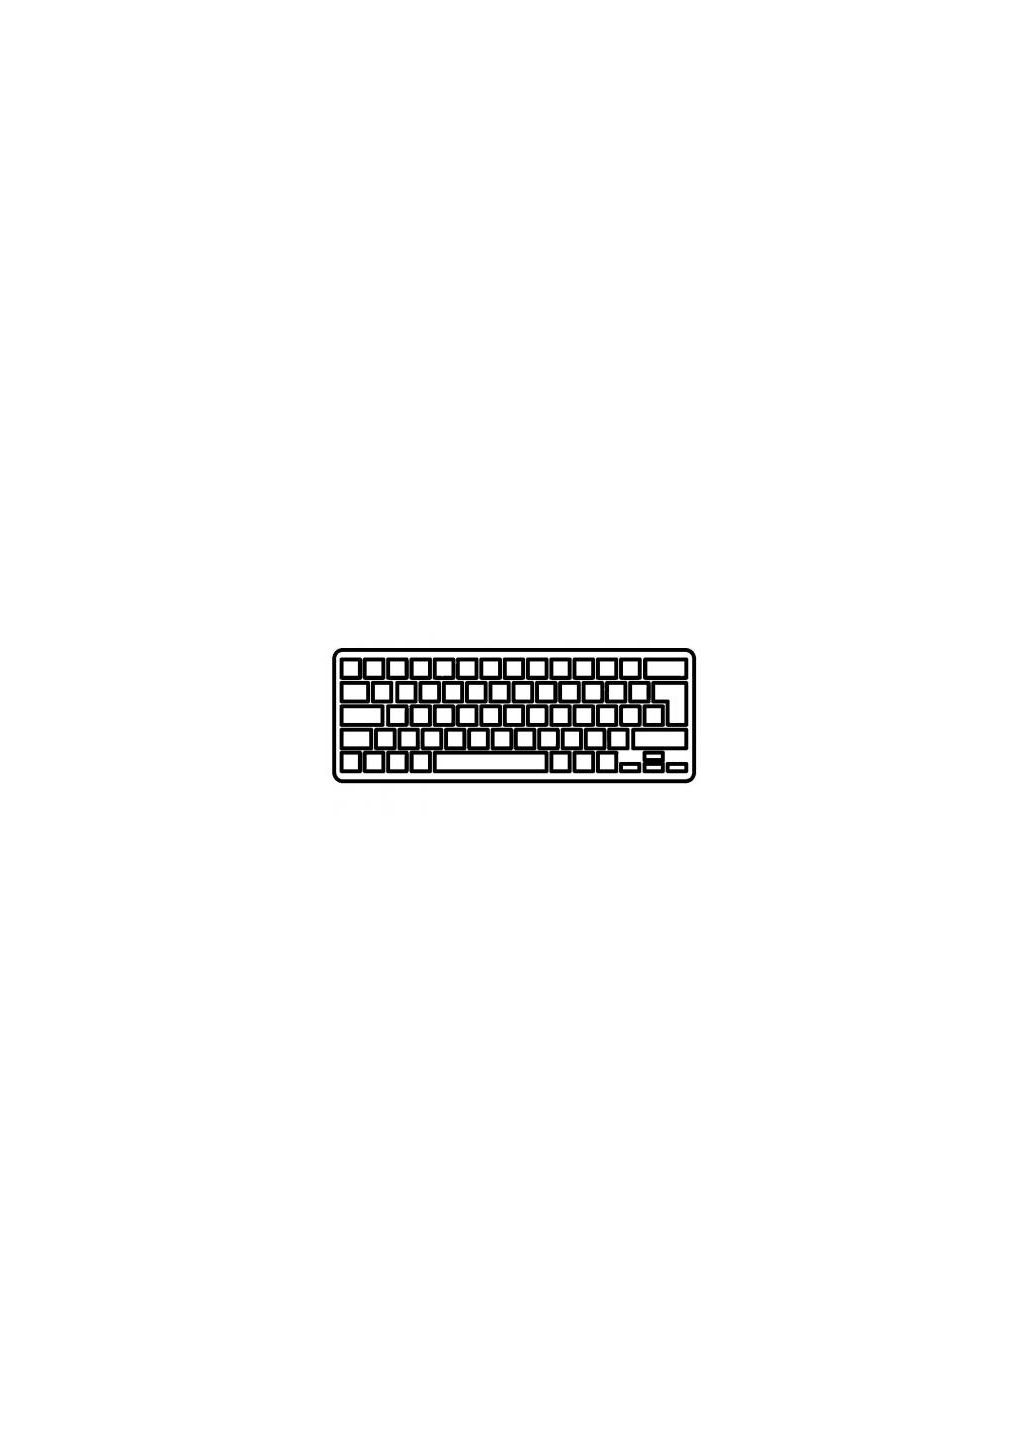 Клавиатура ноутбука Pavilion dv5/dv51000/dv5-1100/dv5-1200 белая RU (A43677) HP pavilion dv5/dv5-1000/dv5-1100/dv5-1200 белая ru (276707706)